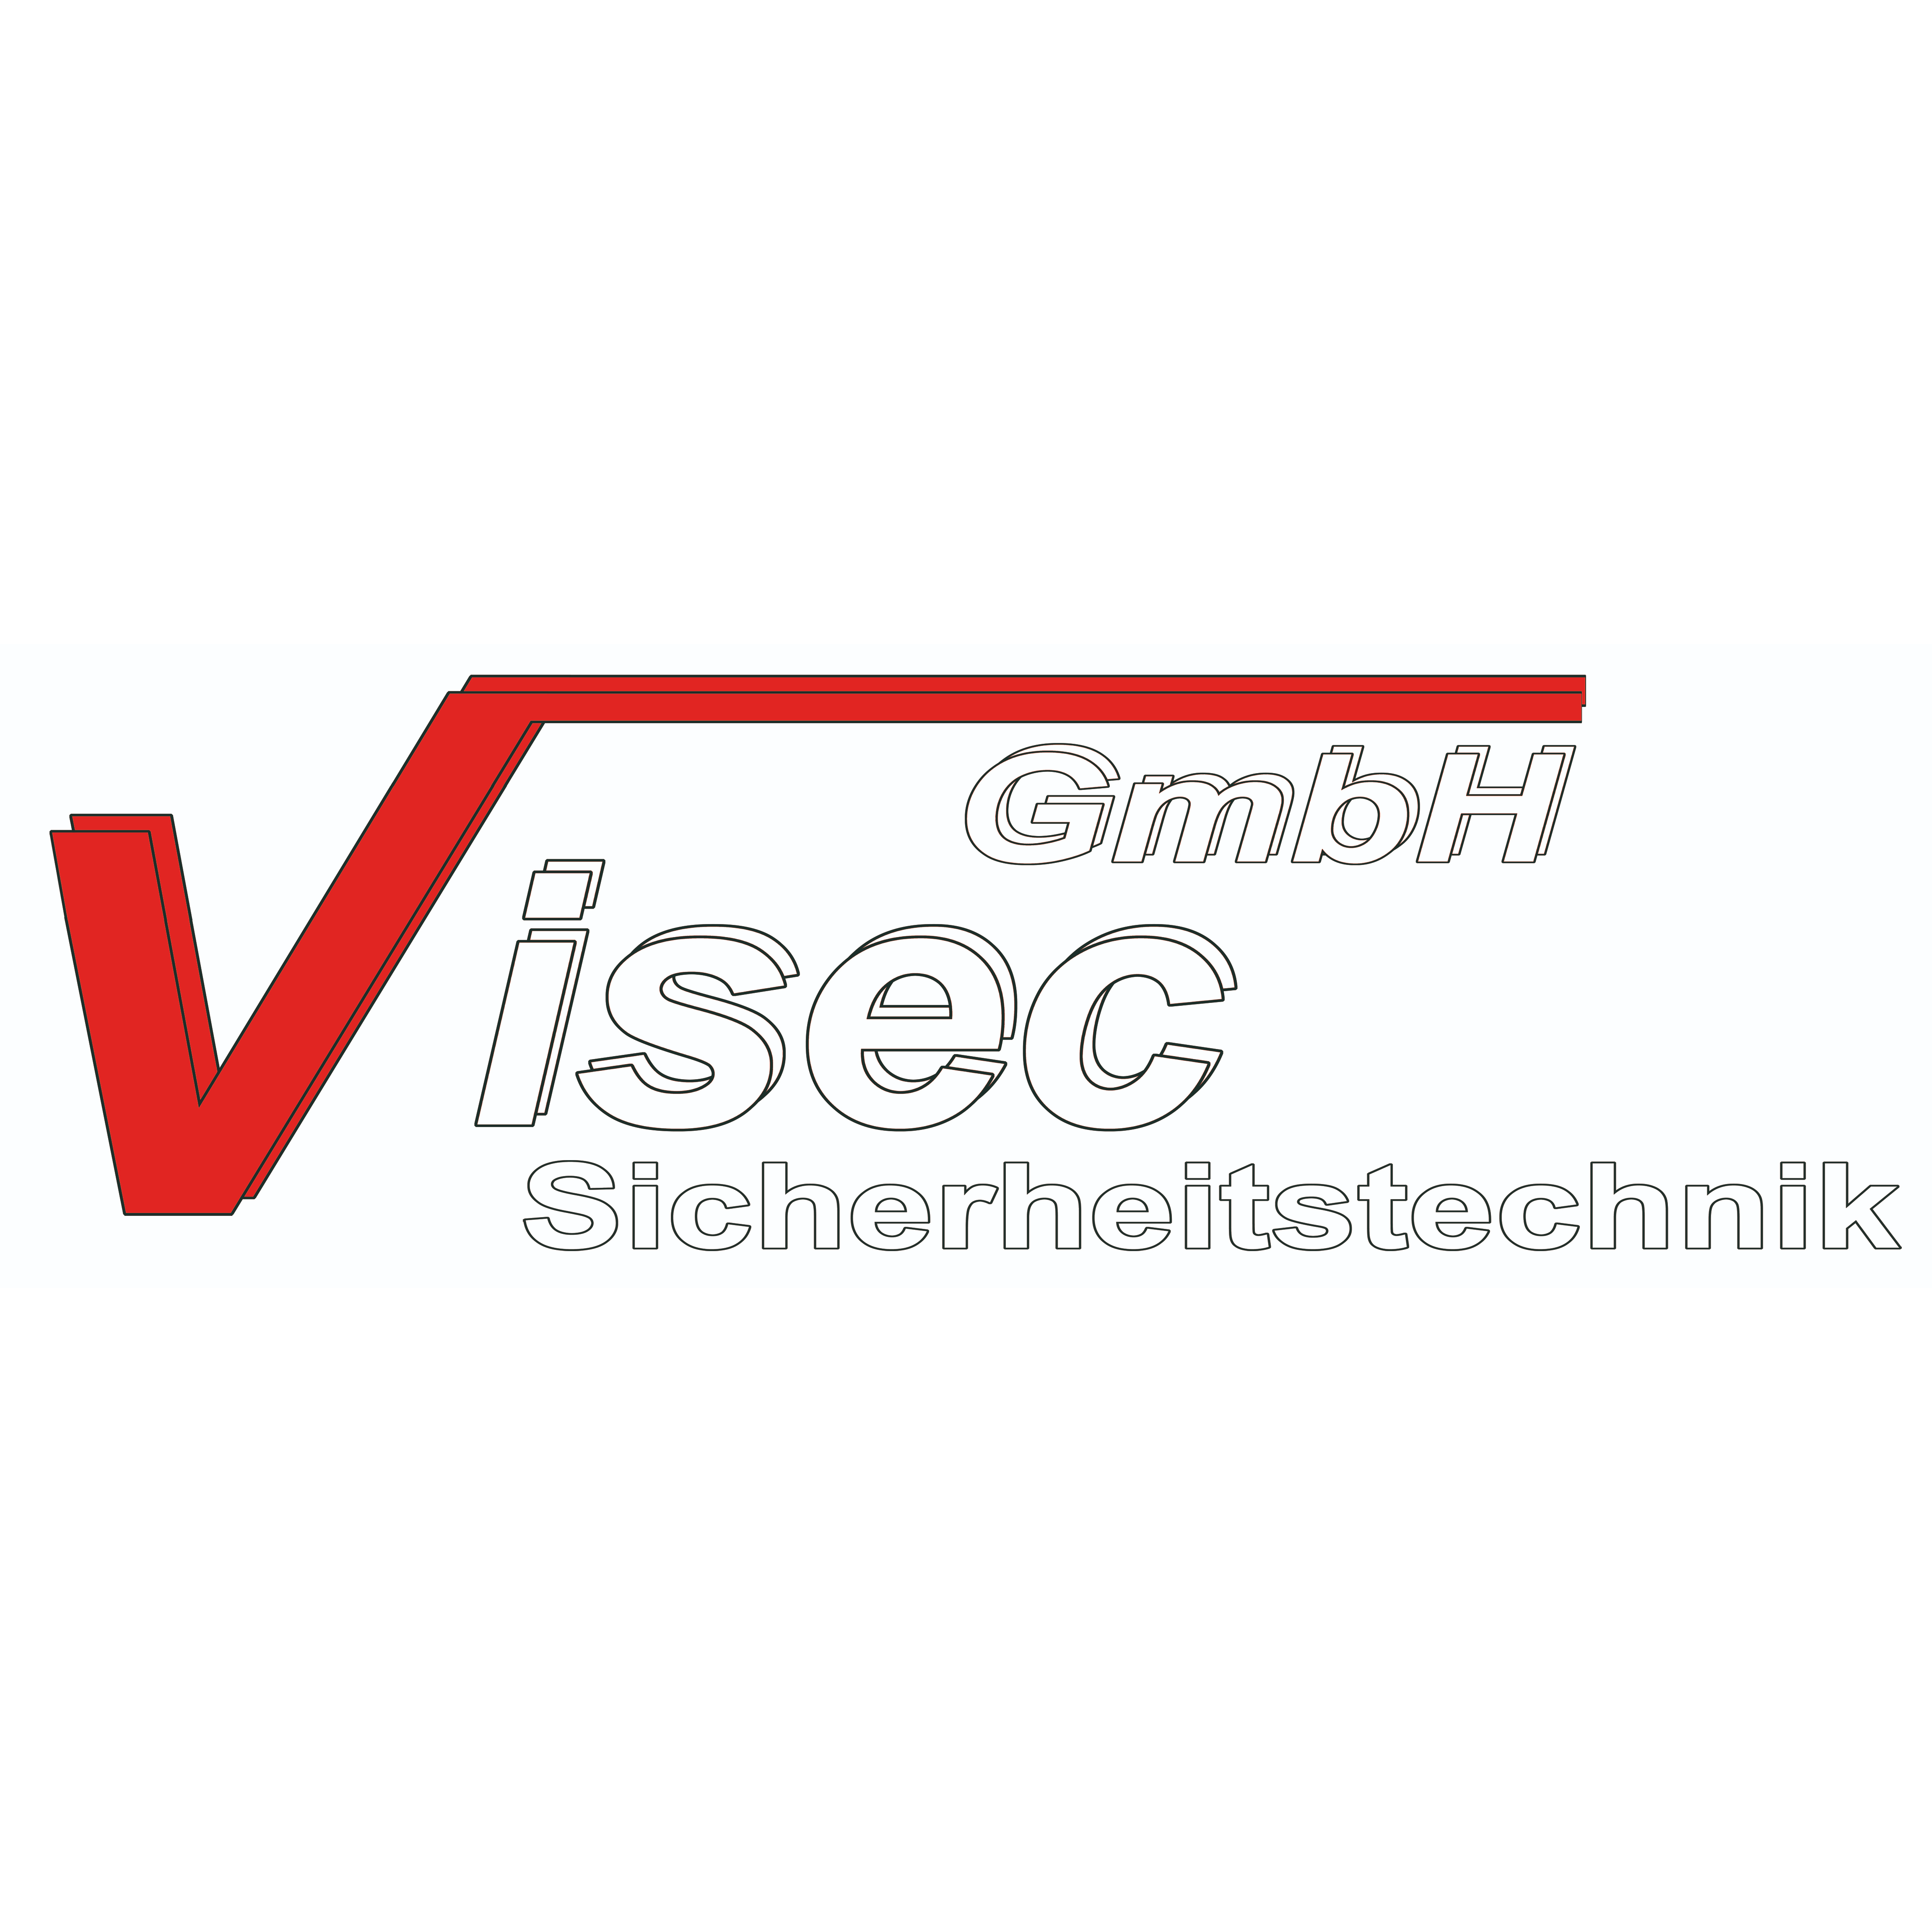 ViSec GmbH Sicherheitstechnik in Osnabrück - Logo